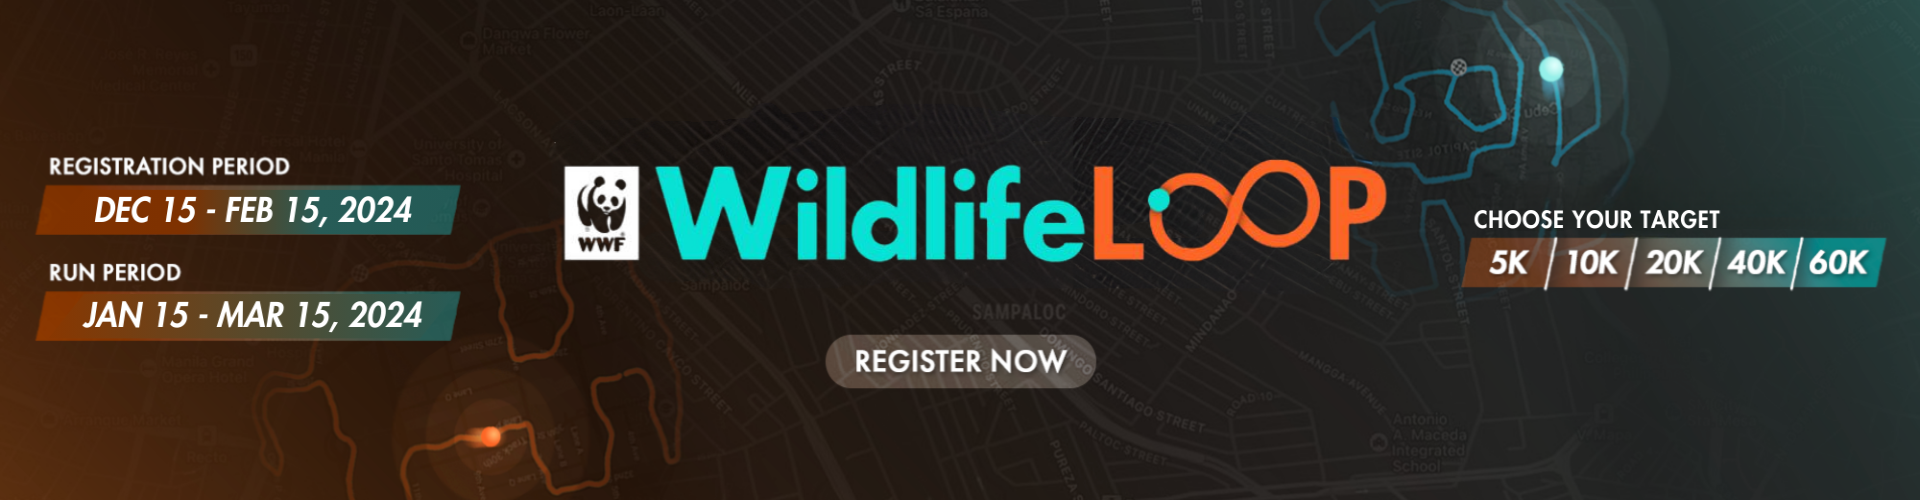 WWF Wildlife Loop